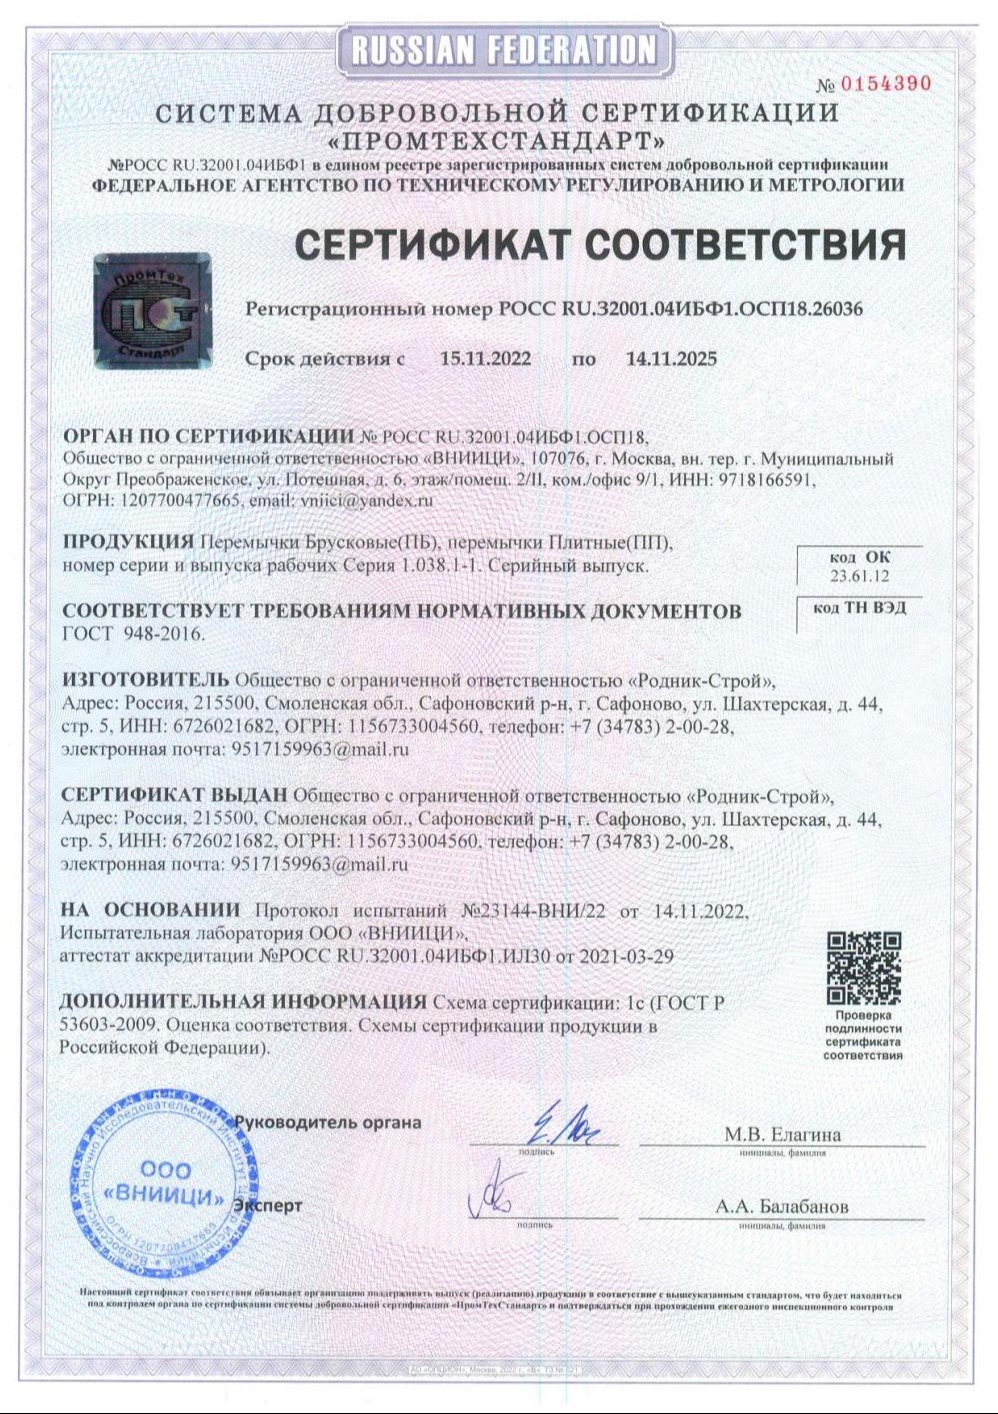 Сертификат соответствия 8